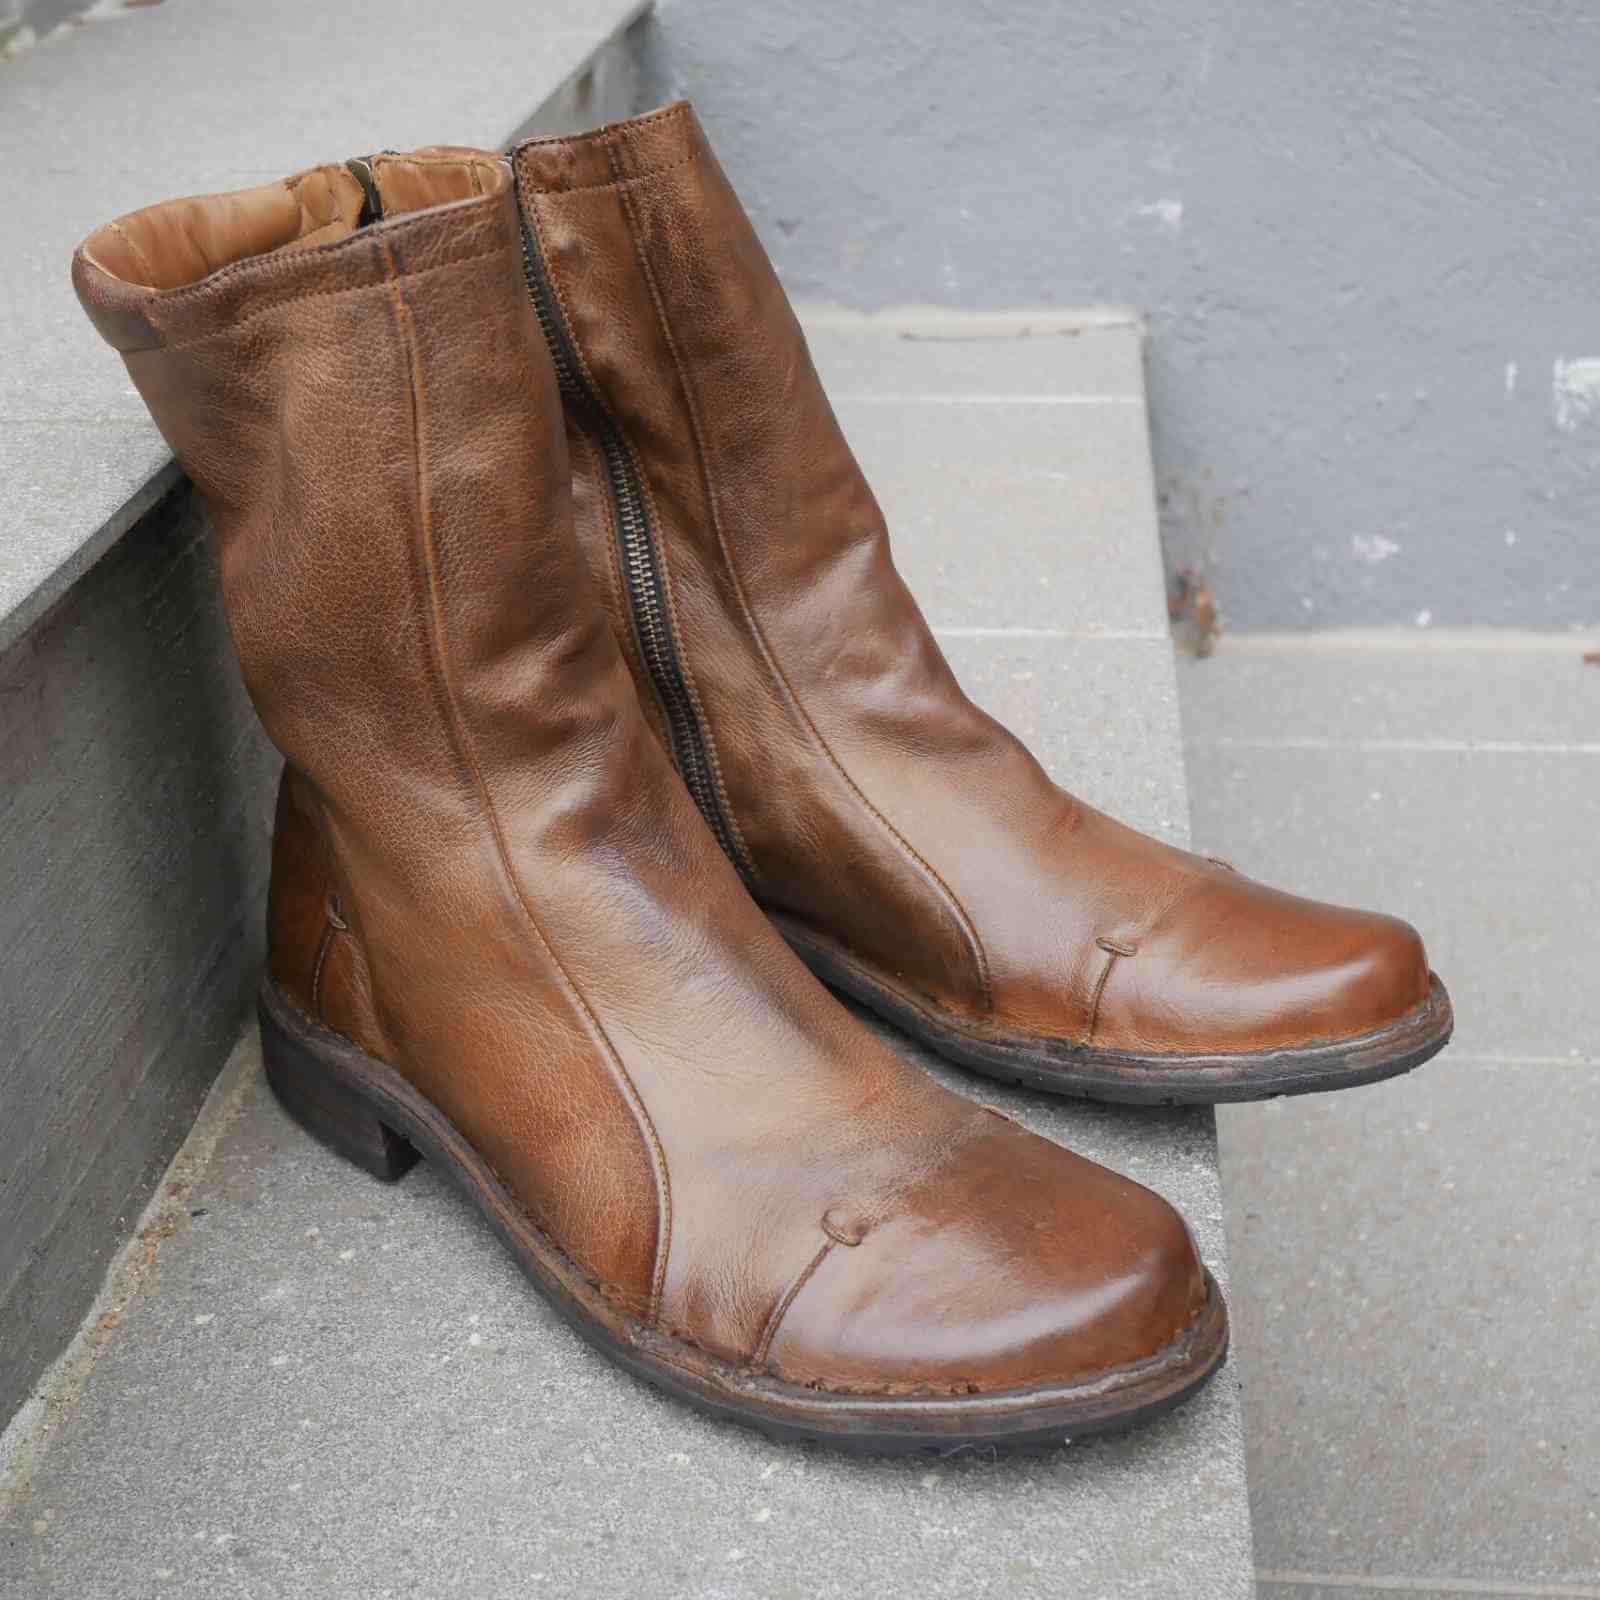 Brune læderstøvler i lækkert patina look fra Bubetti